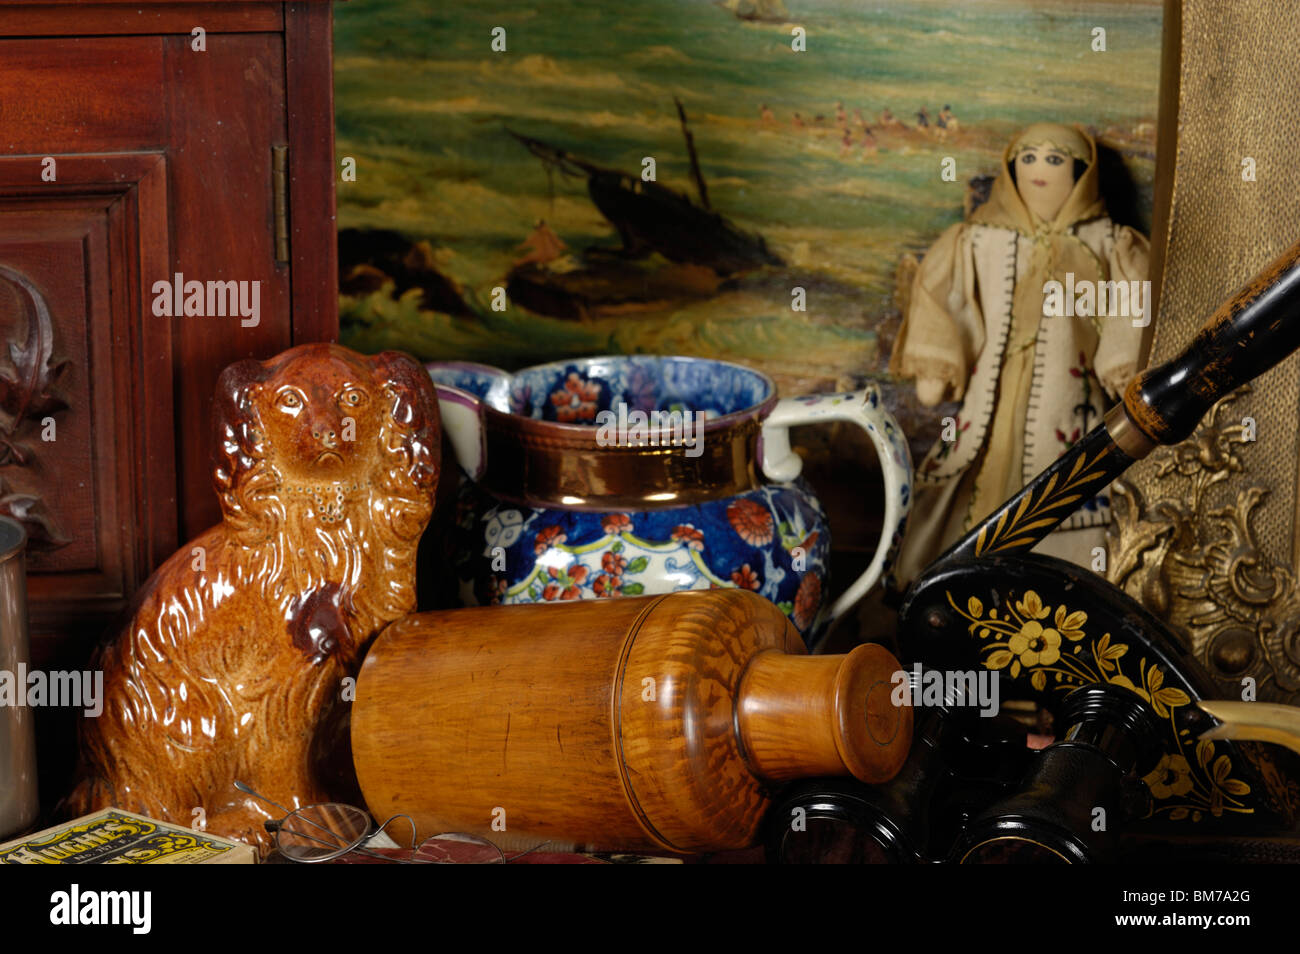 Eine Auswahl an Antiquitäten und Sammlerstücke Kleinteile wie kann auf einem britischen Händler Stall gesehen werden. Stockfoto